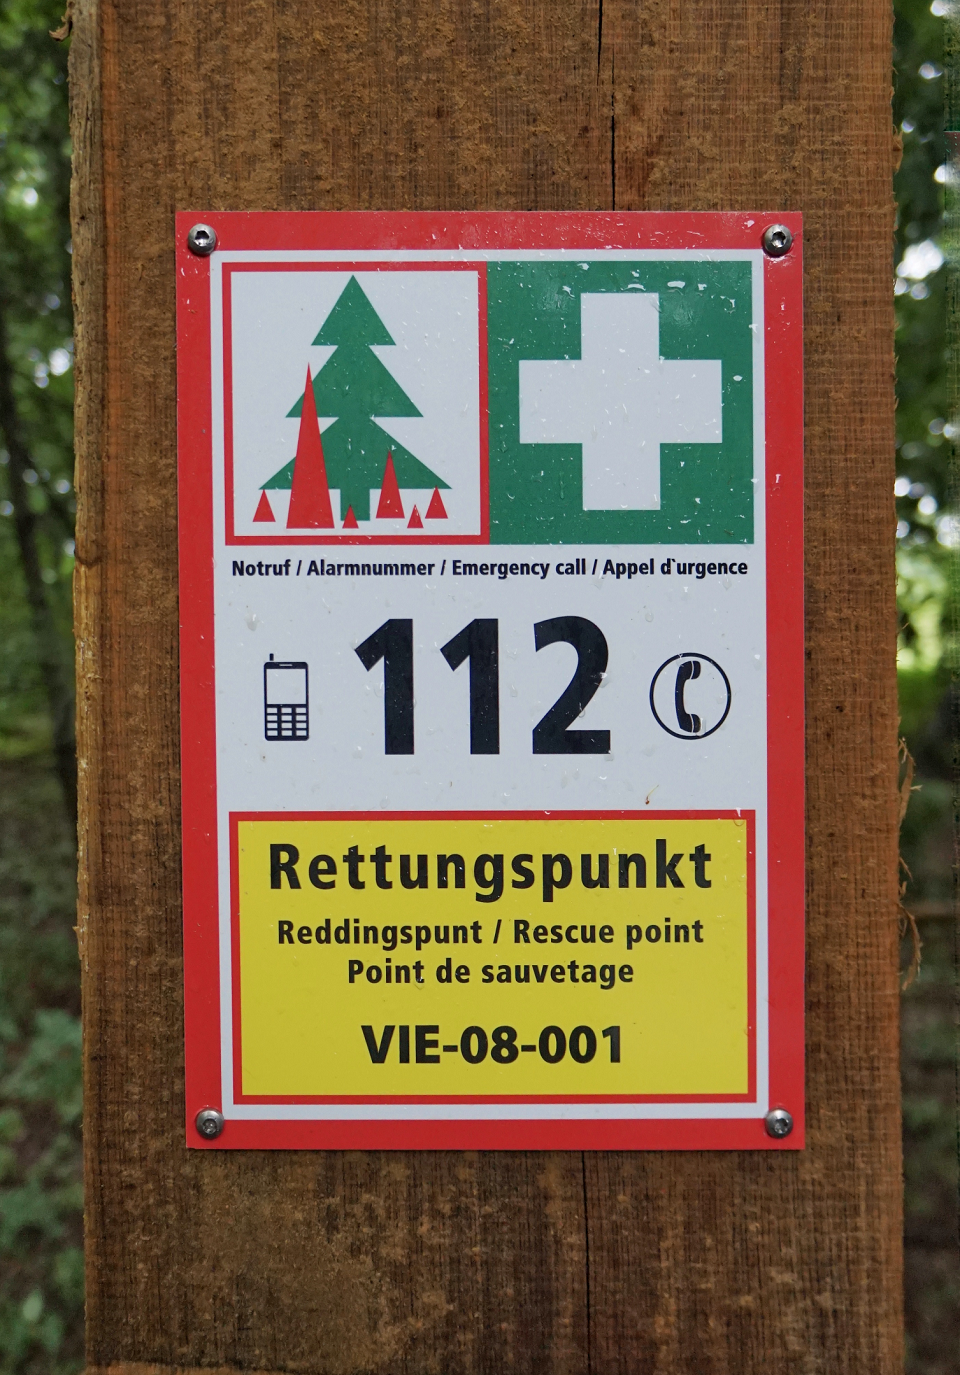 Eines der frisch aufgehängten Schilder mit den Angaben zum Rettungspunkt (Foto: Stadt Viersen)  - Das Bild zeigt ein an einen Baum montiertes Schild mit den Angaben Notruf 112 und Rettungspunkt VIE-08-001